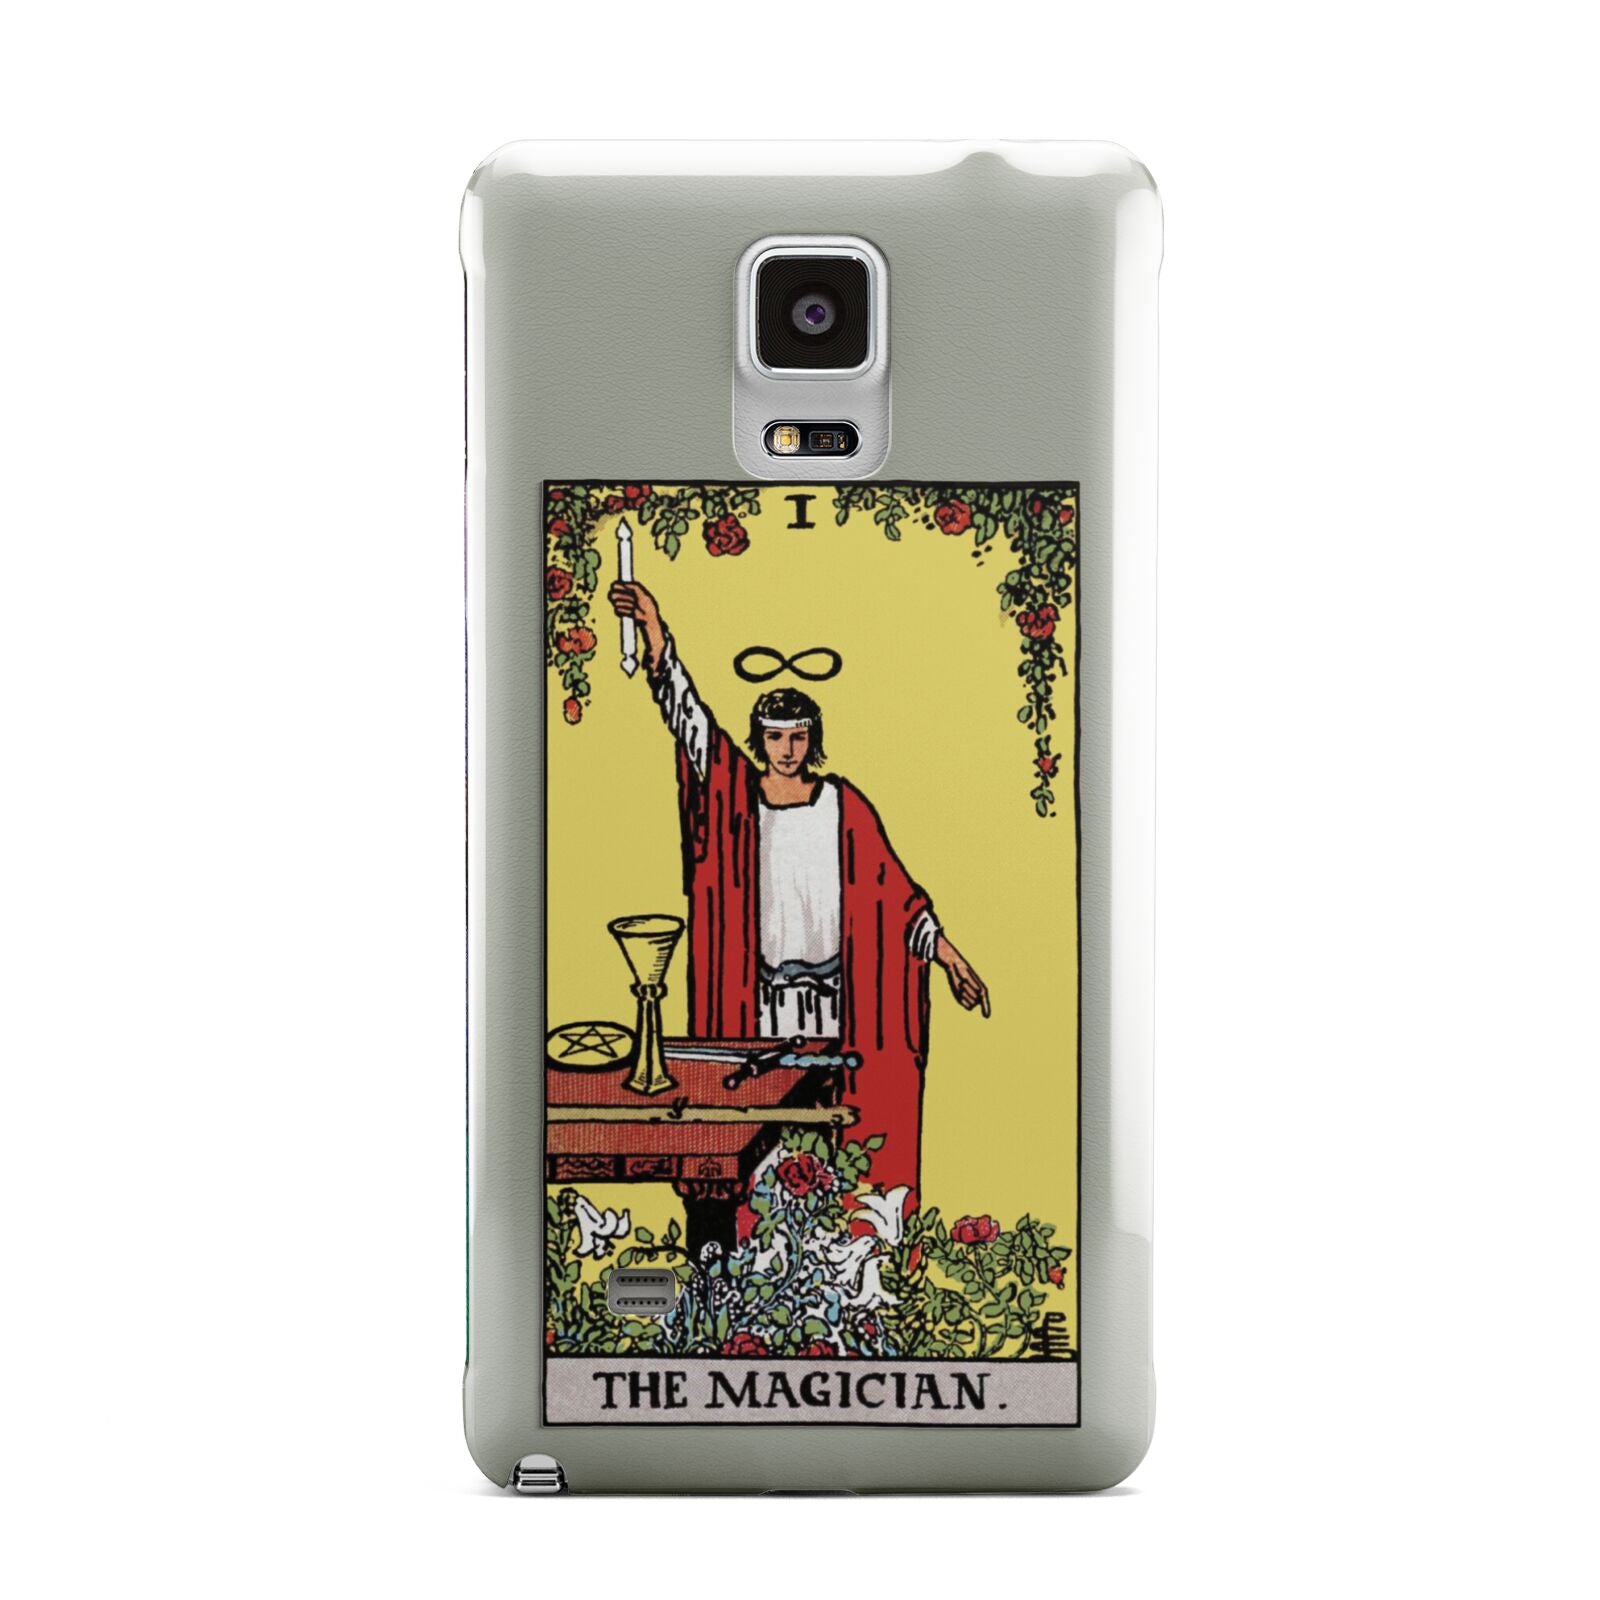 The Magician Tarot Card Samsung Galaxy Note 4 Case